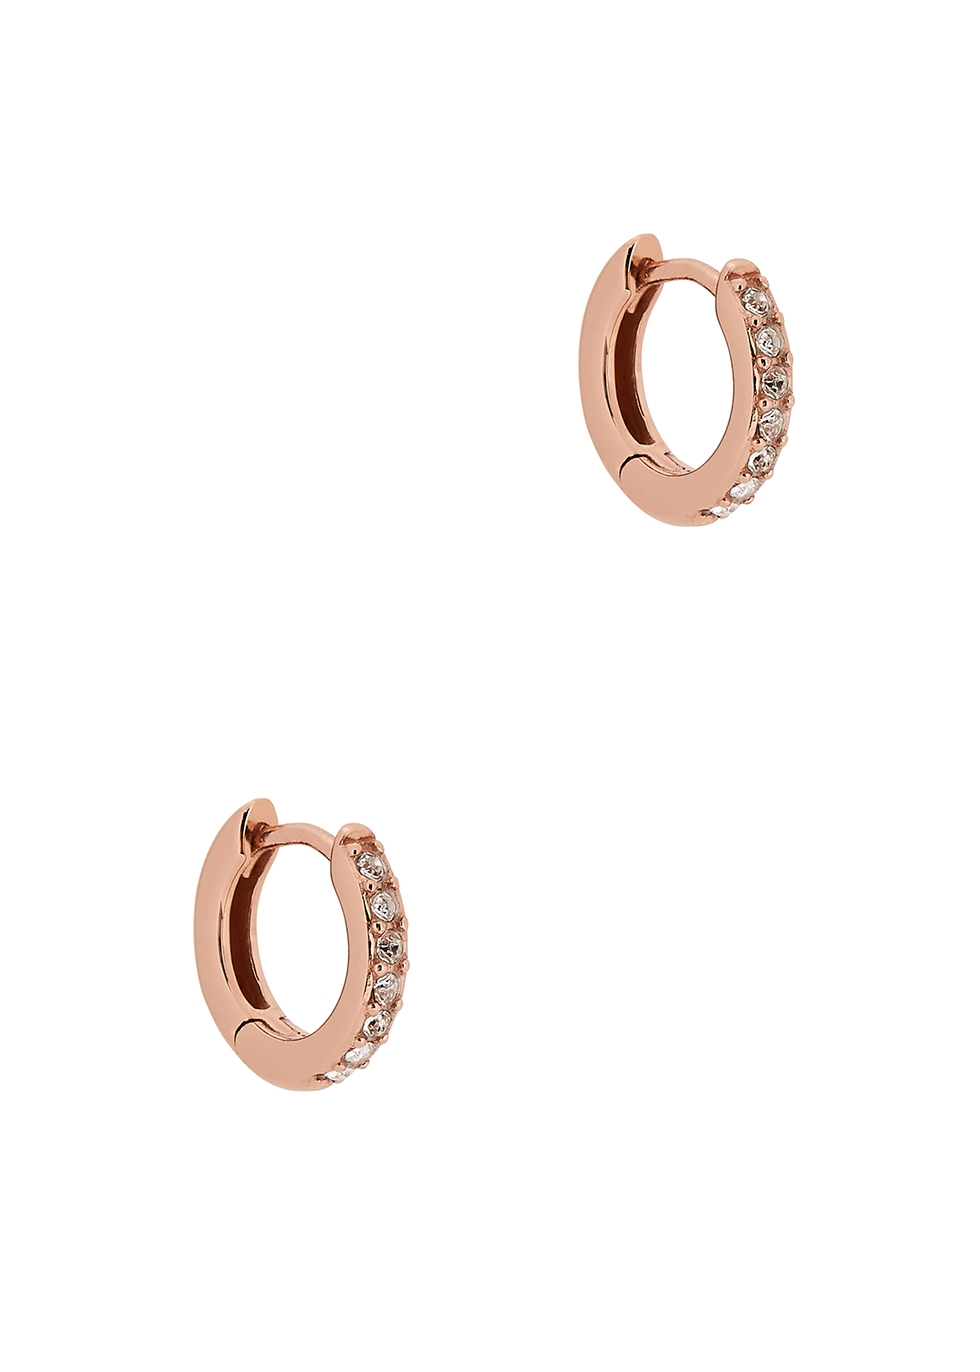 Rose gold-plated hoop earrings